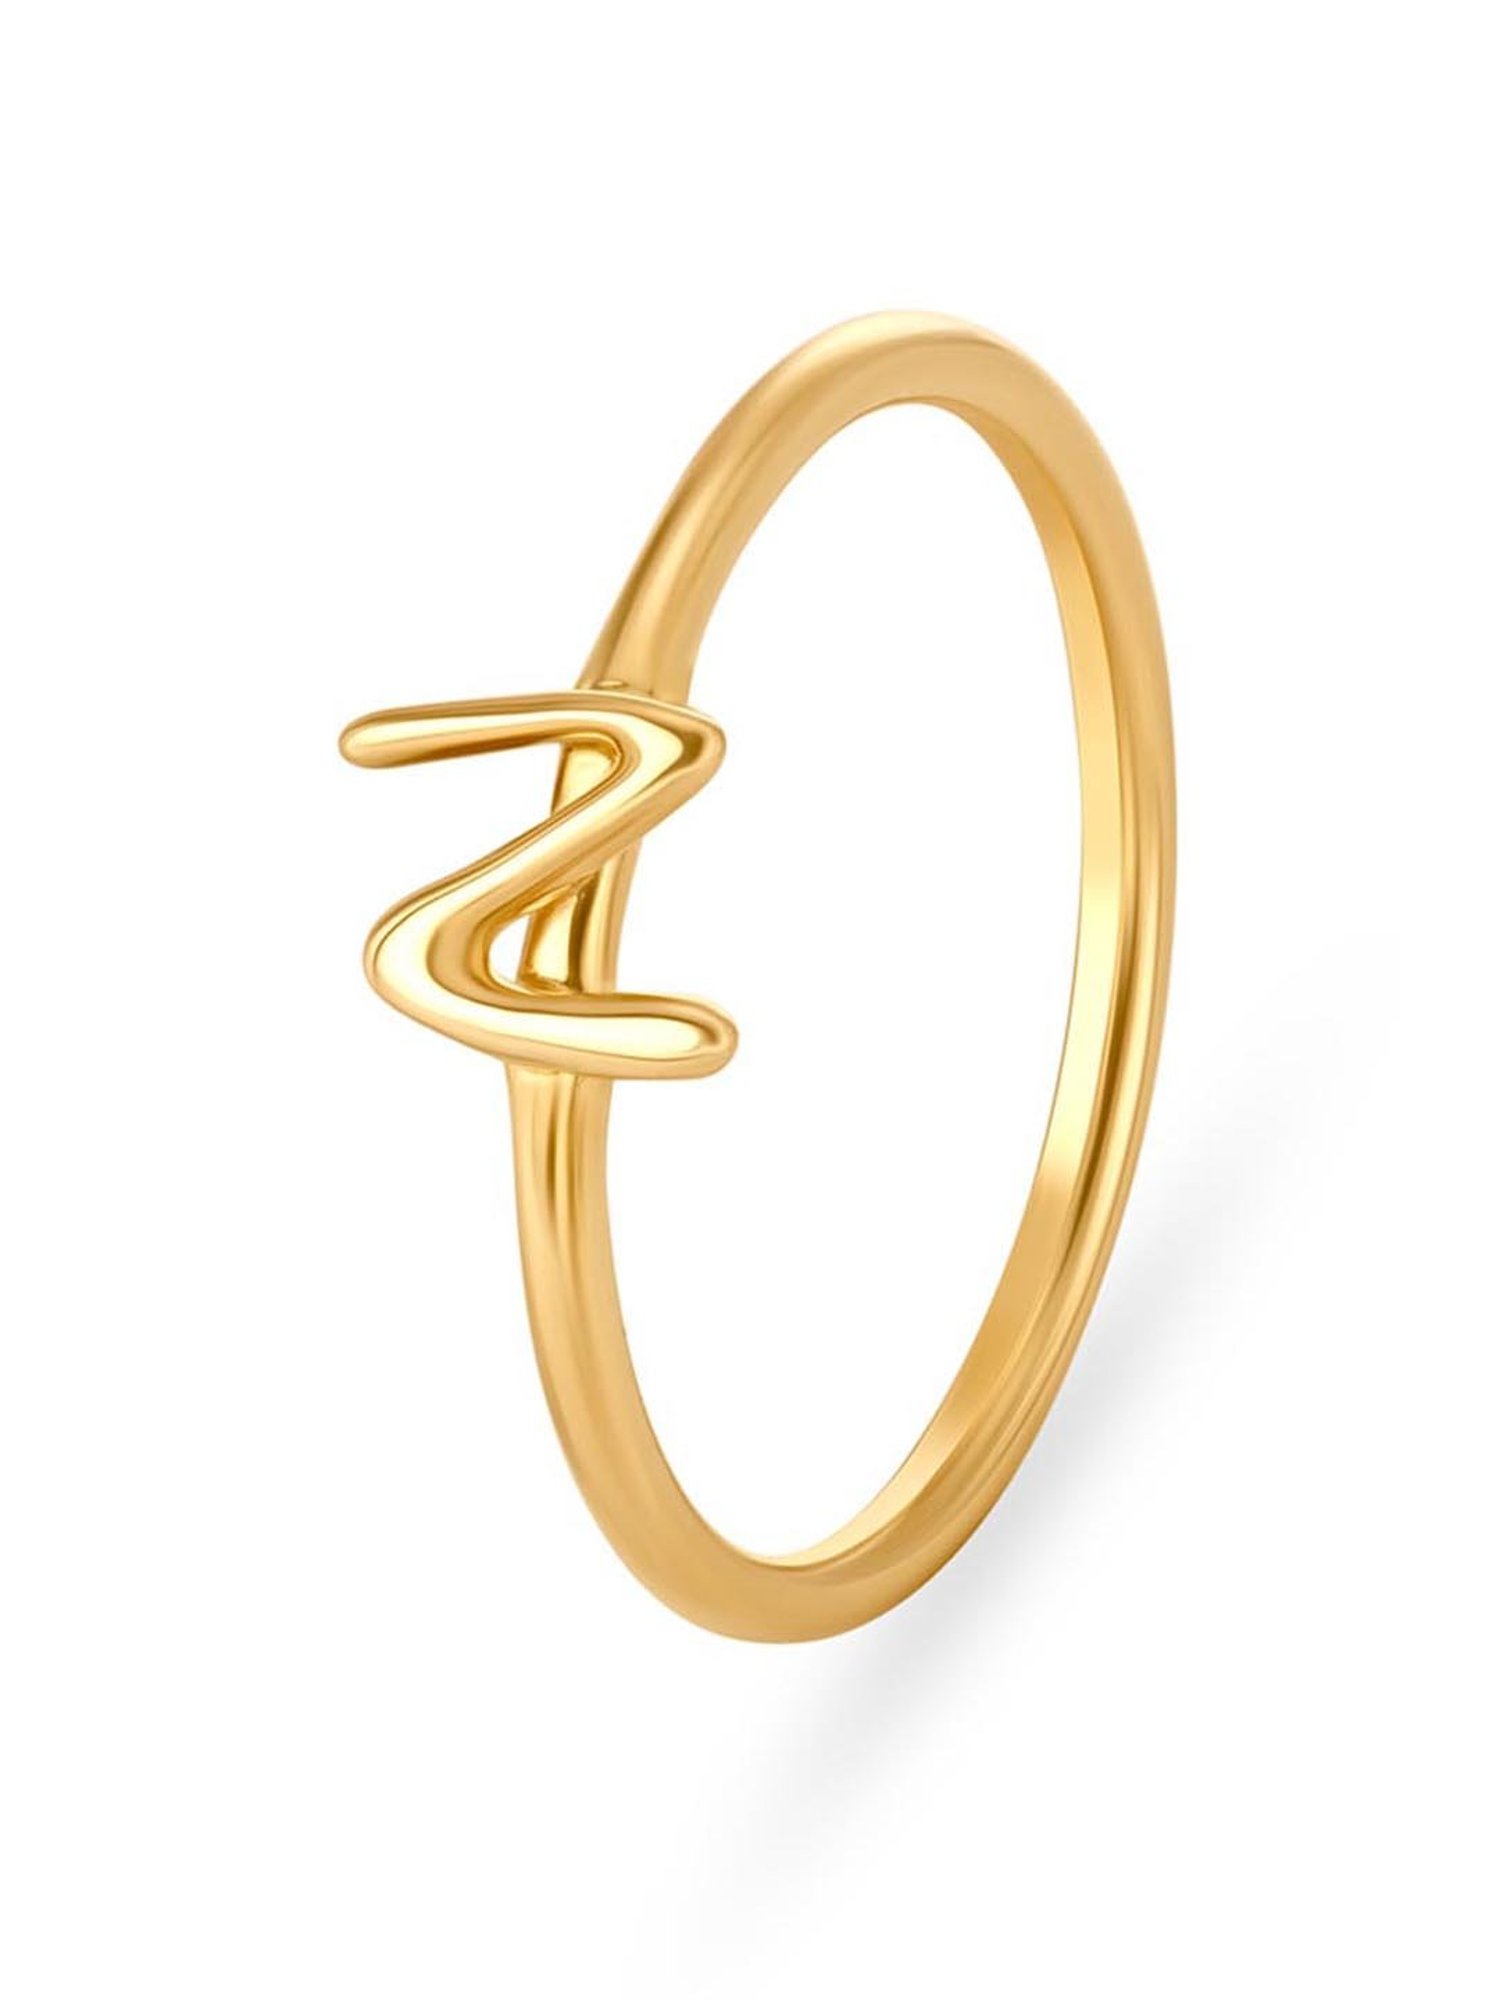 14K Yellow Gold Initial P Ring, Men's Initial Ring, Signet Ring - Etsy